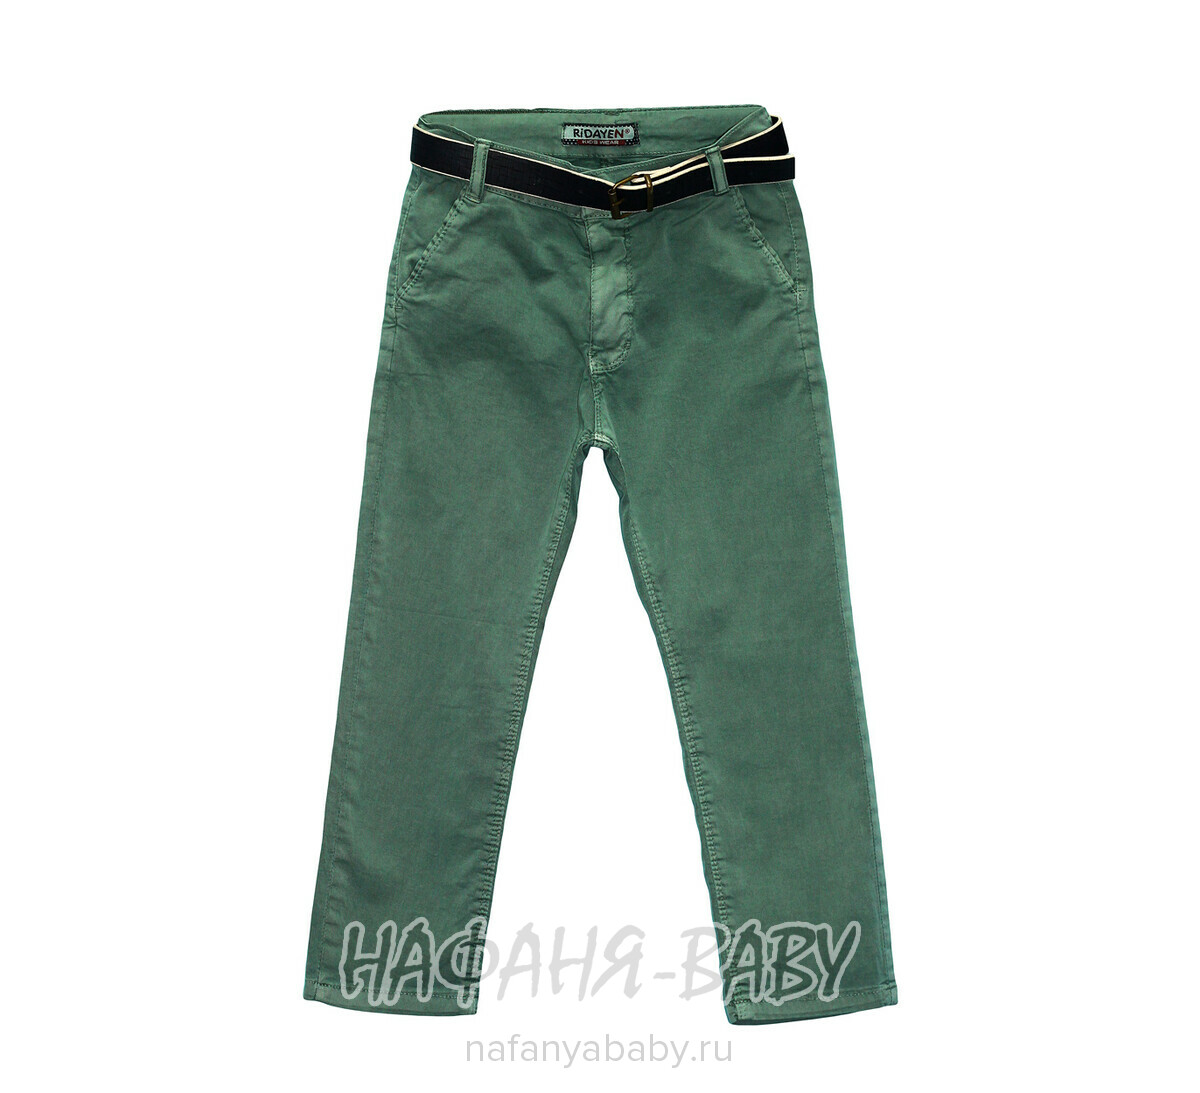 Летние брюки для мальчика RIDAYEN, купить в интернет магазине Нафаня. арт: 1184.